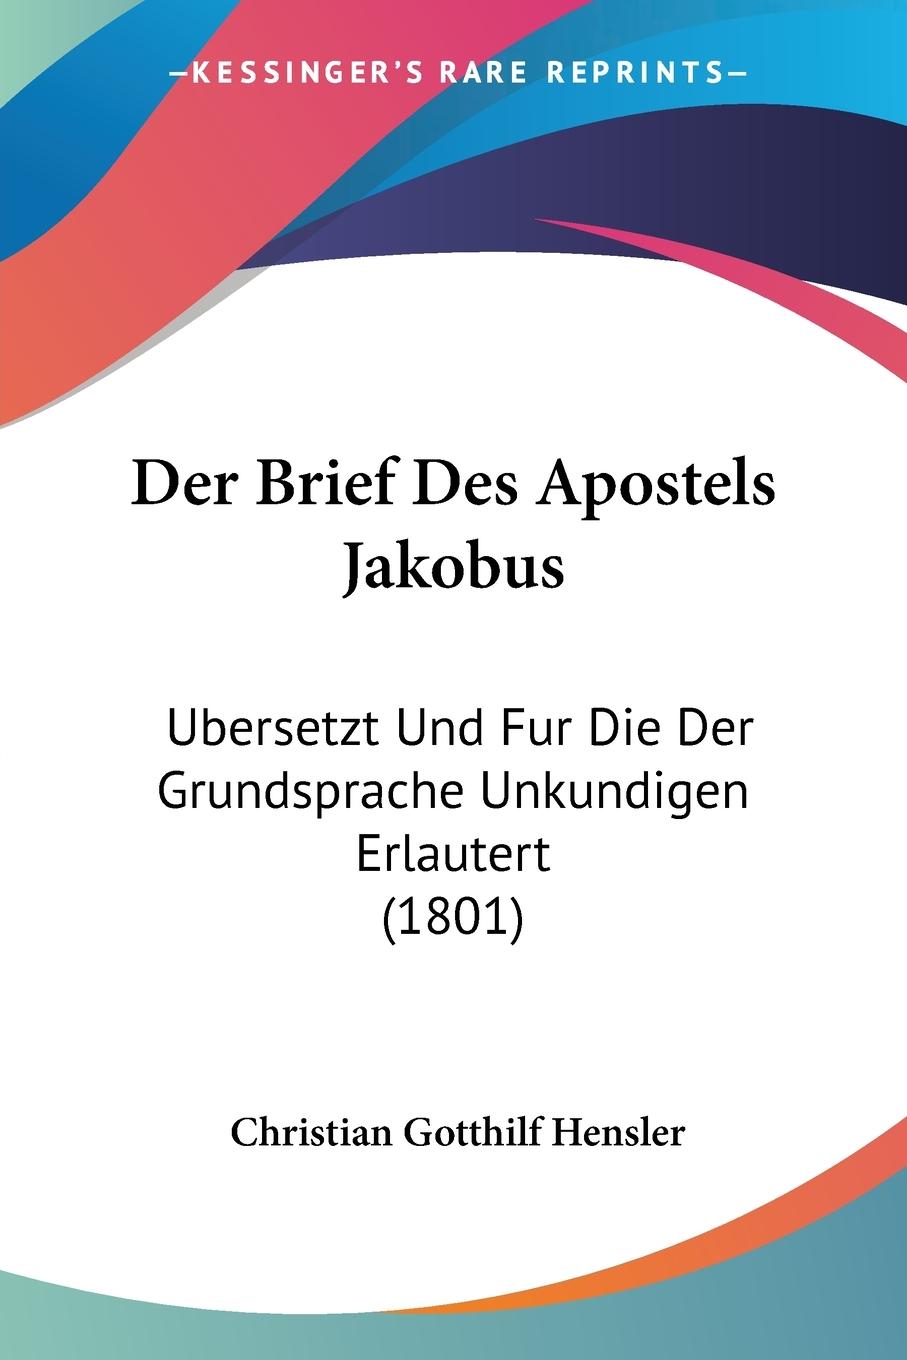 Der Brief Des Apostels Jakobus - Hensler, Christian Gotthilf